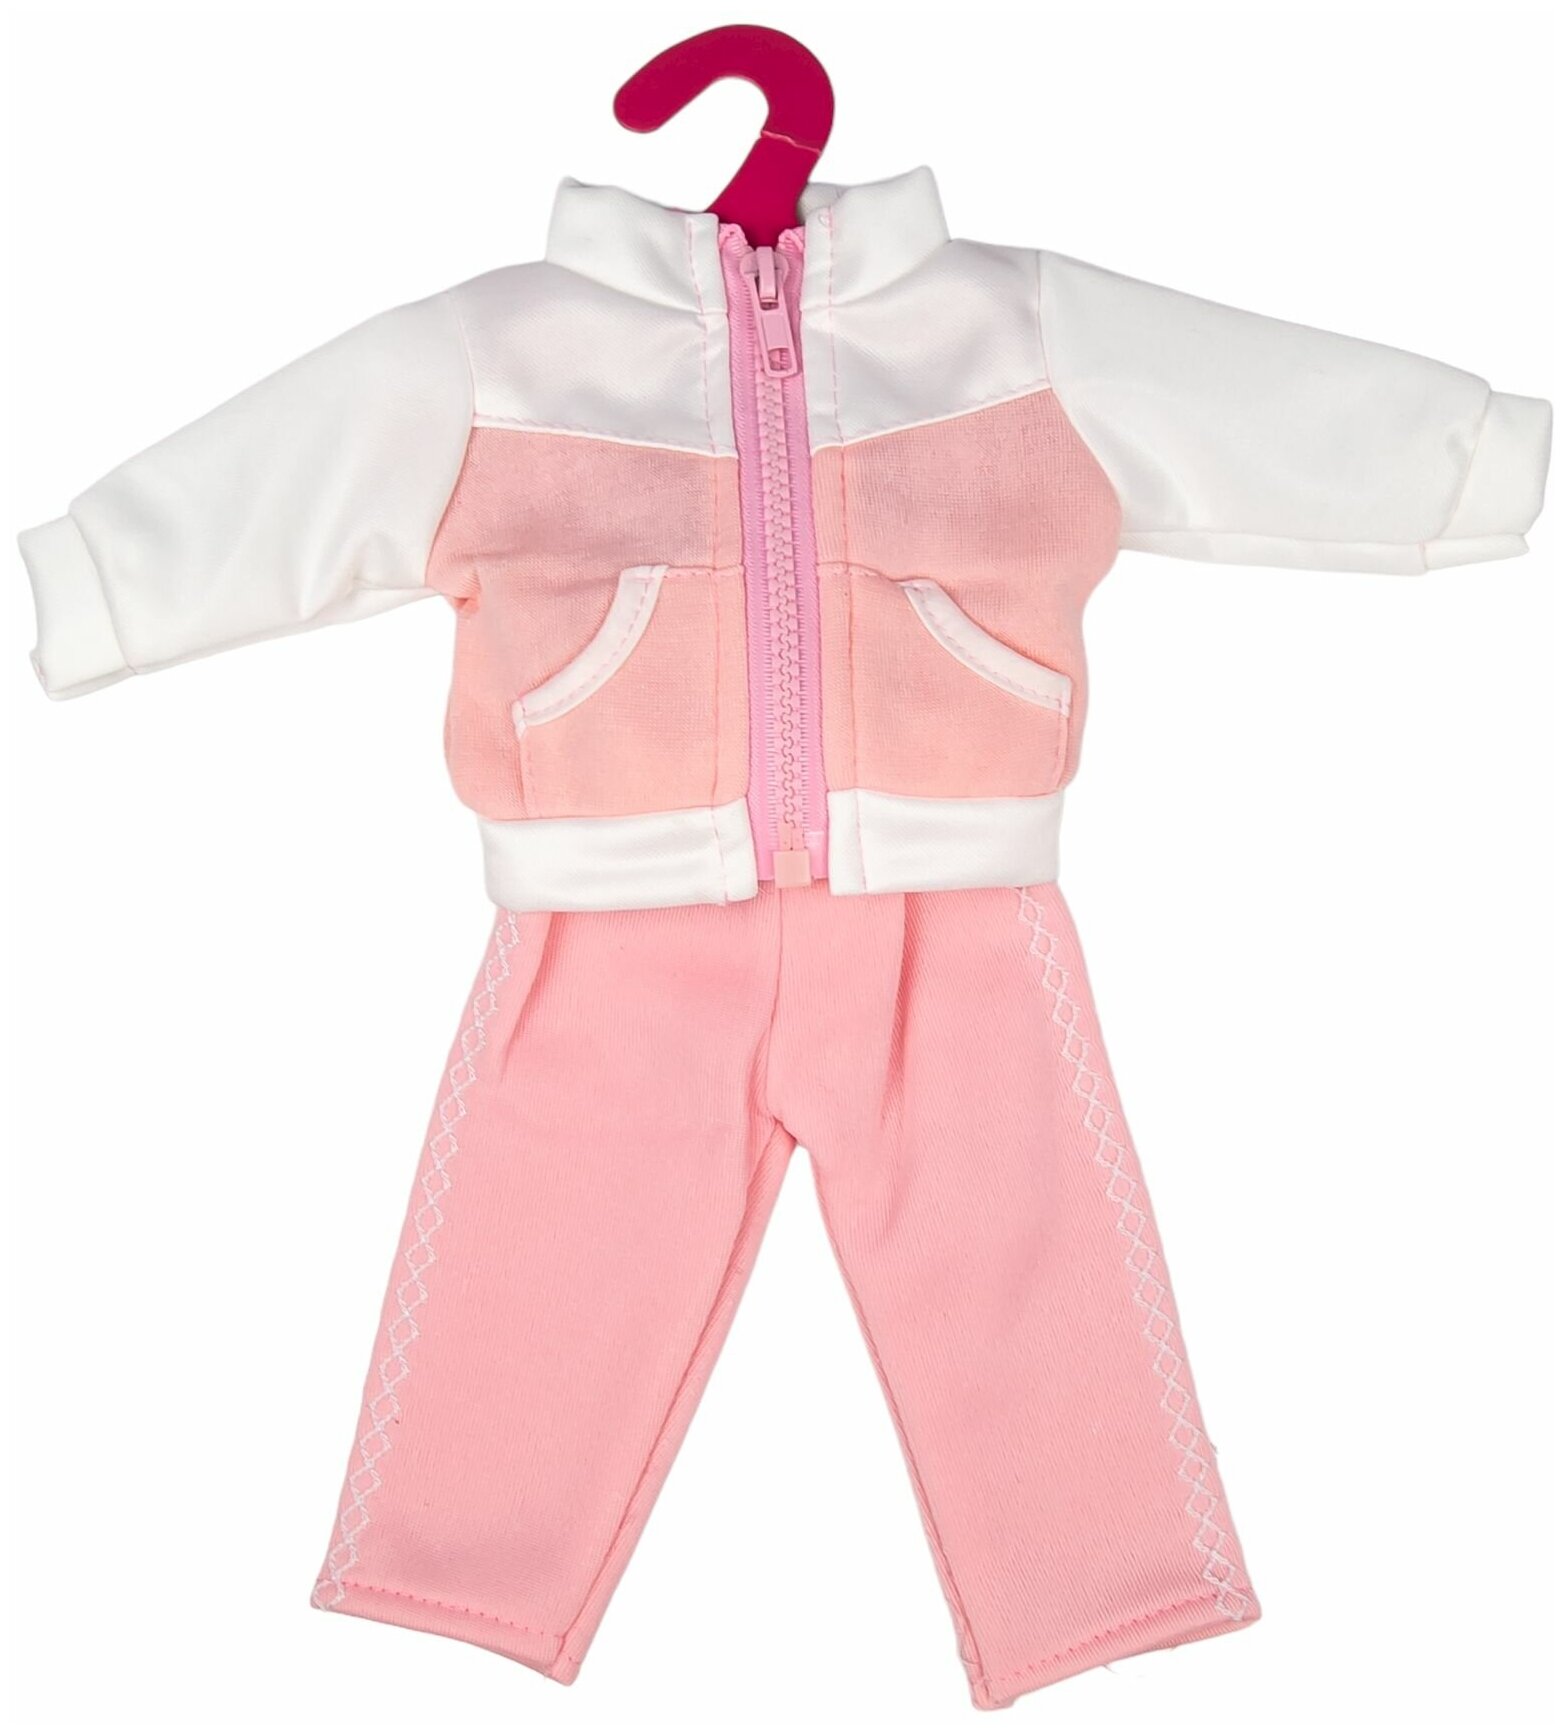 Одежда для куклы ростом 35 - 42 см розовый спортивный костюм для пупса GCM18-48